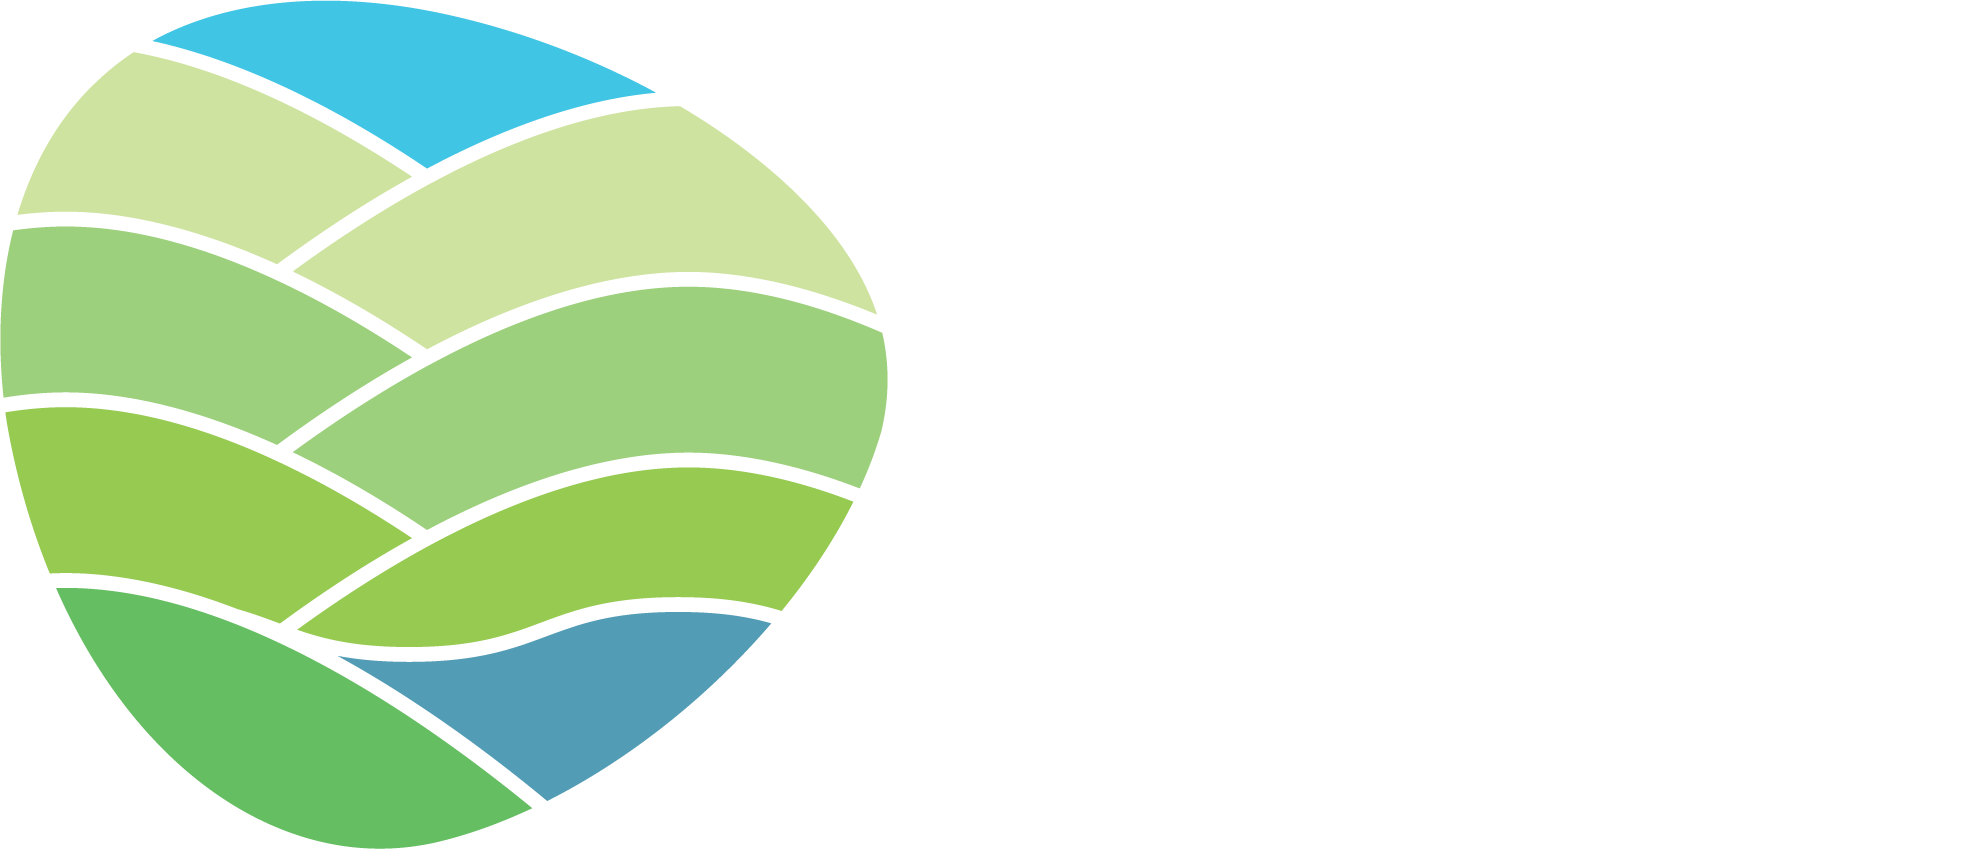 Yungaburra Waterfront Developments